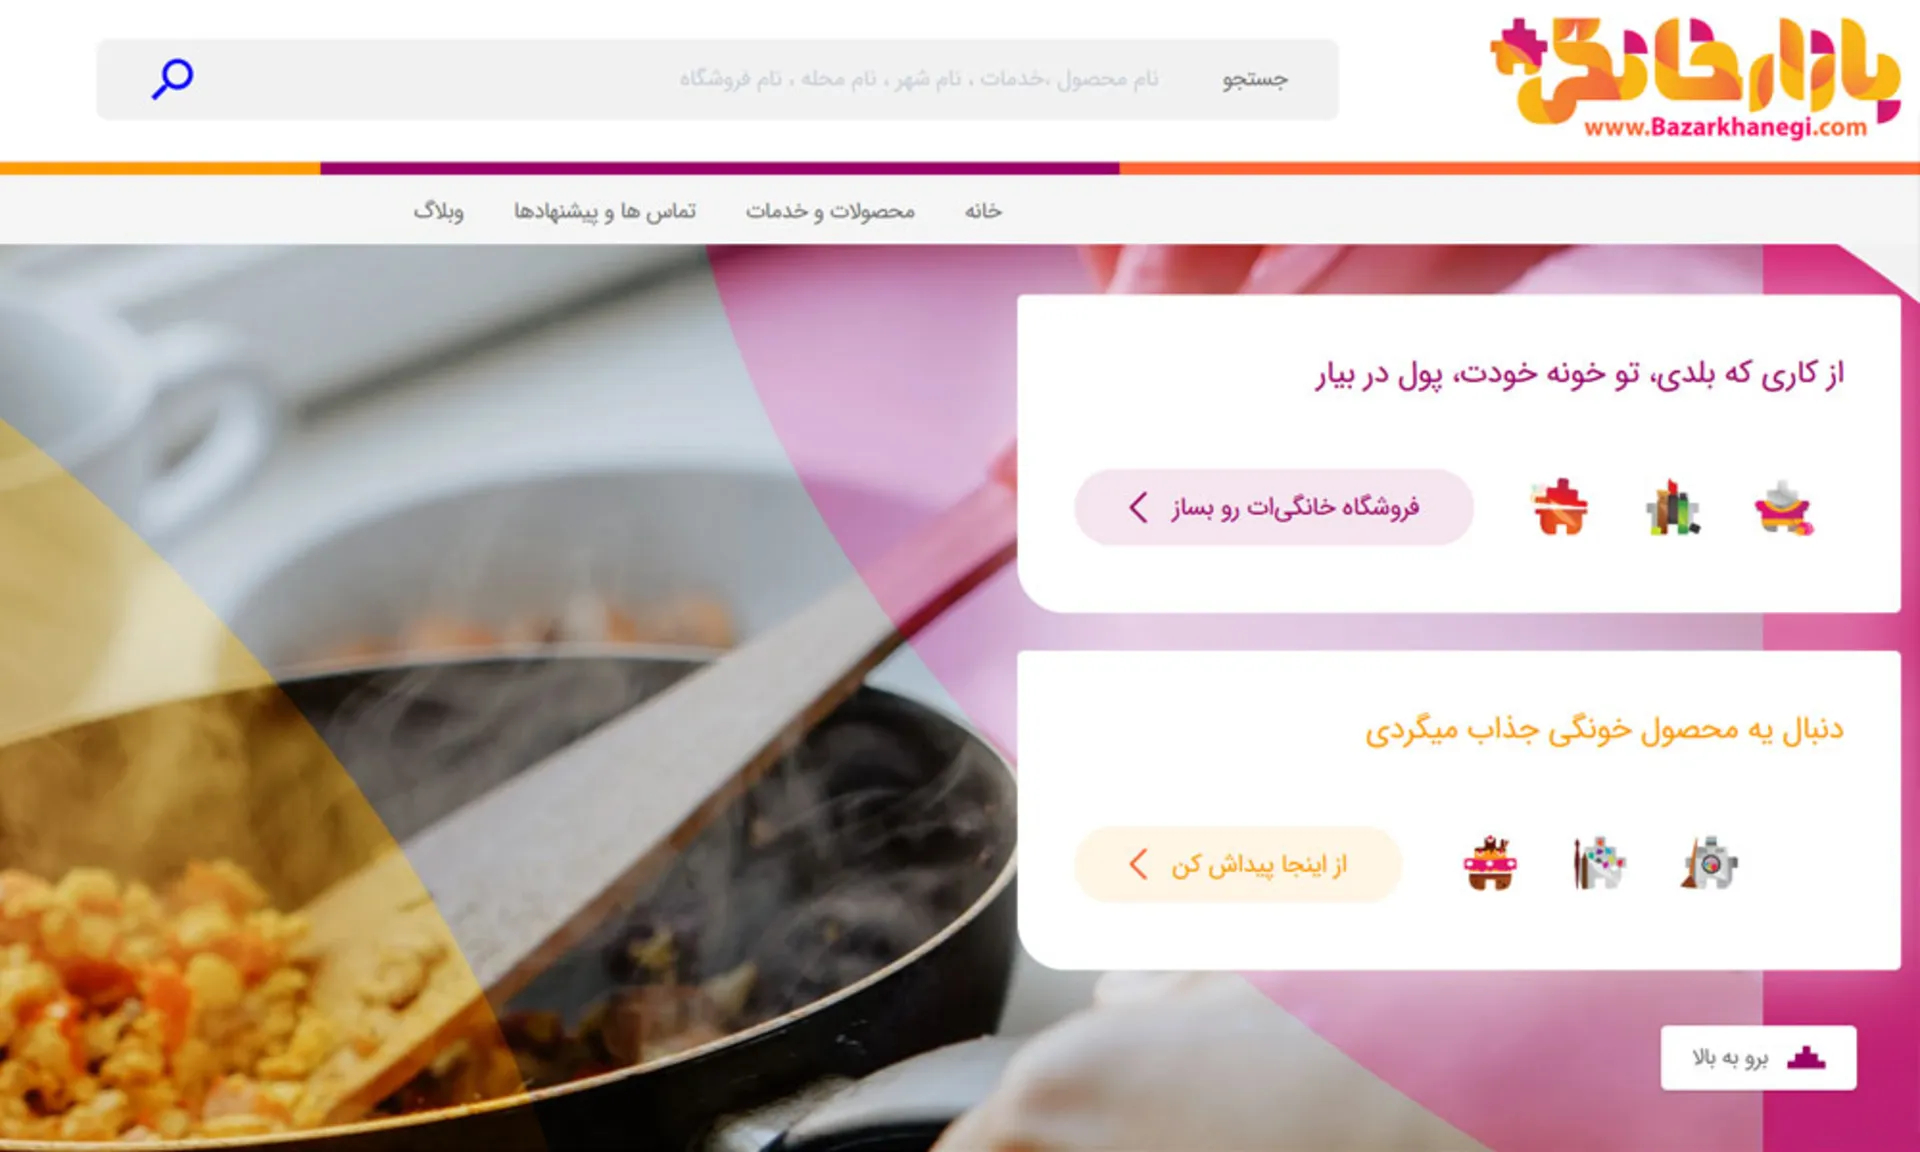 سایت ایرانی بازار خانگی